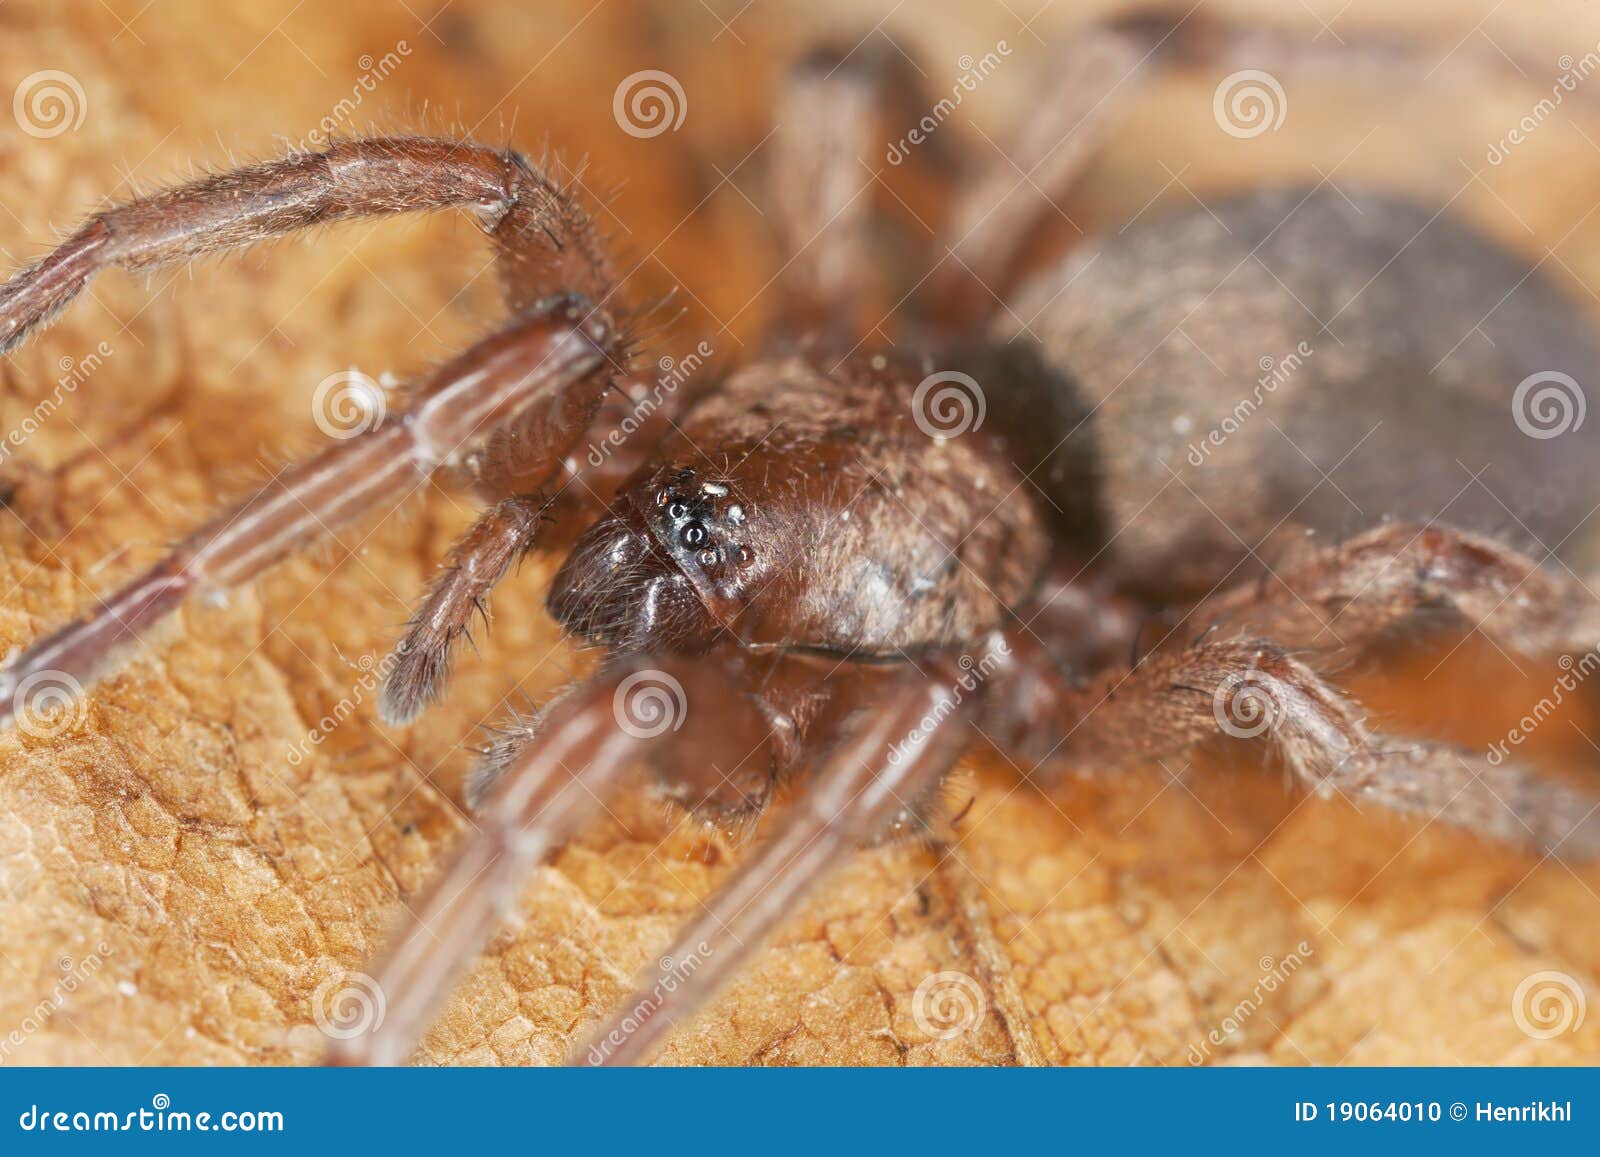 stealthy ground spider (gnaphosidae)